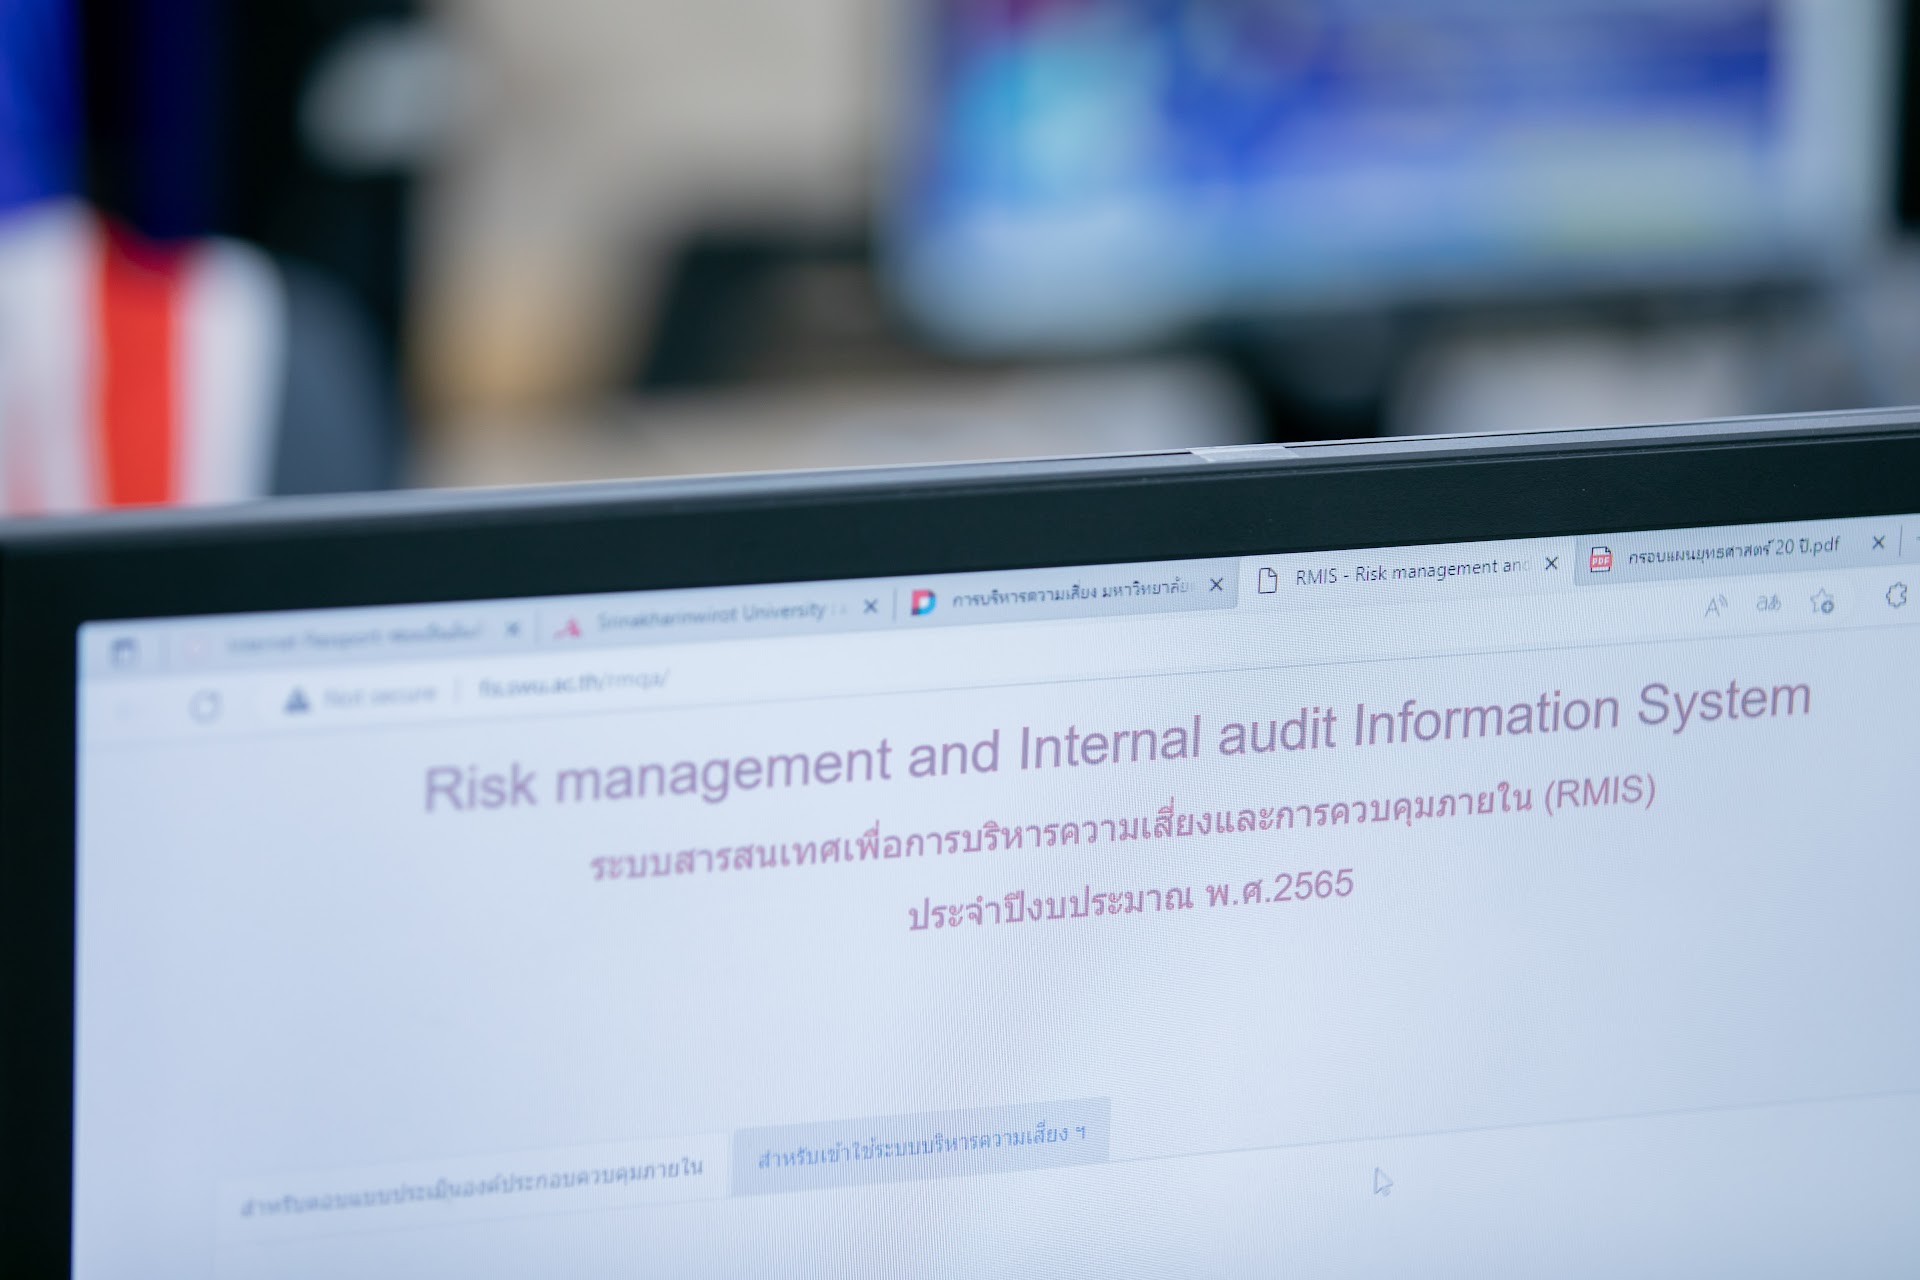 โครงการอบรม"การใช้ระบบสารสนเทศเพื่อบริหารความเสี่ยงฯและควบคุมภายใน (Risk Management and internal audit Information System : RMIS)"